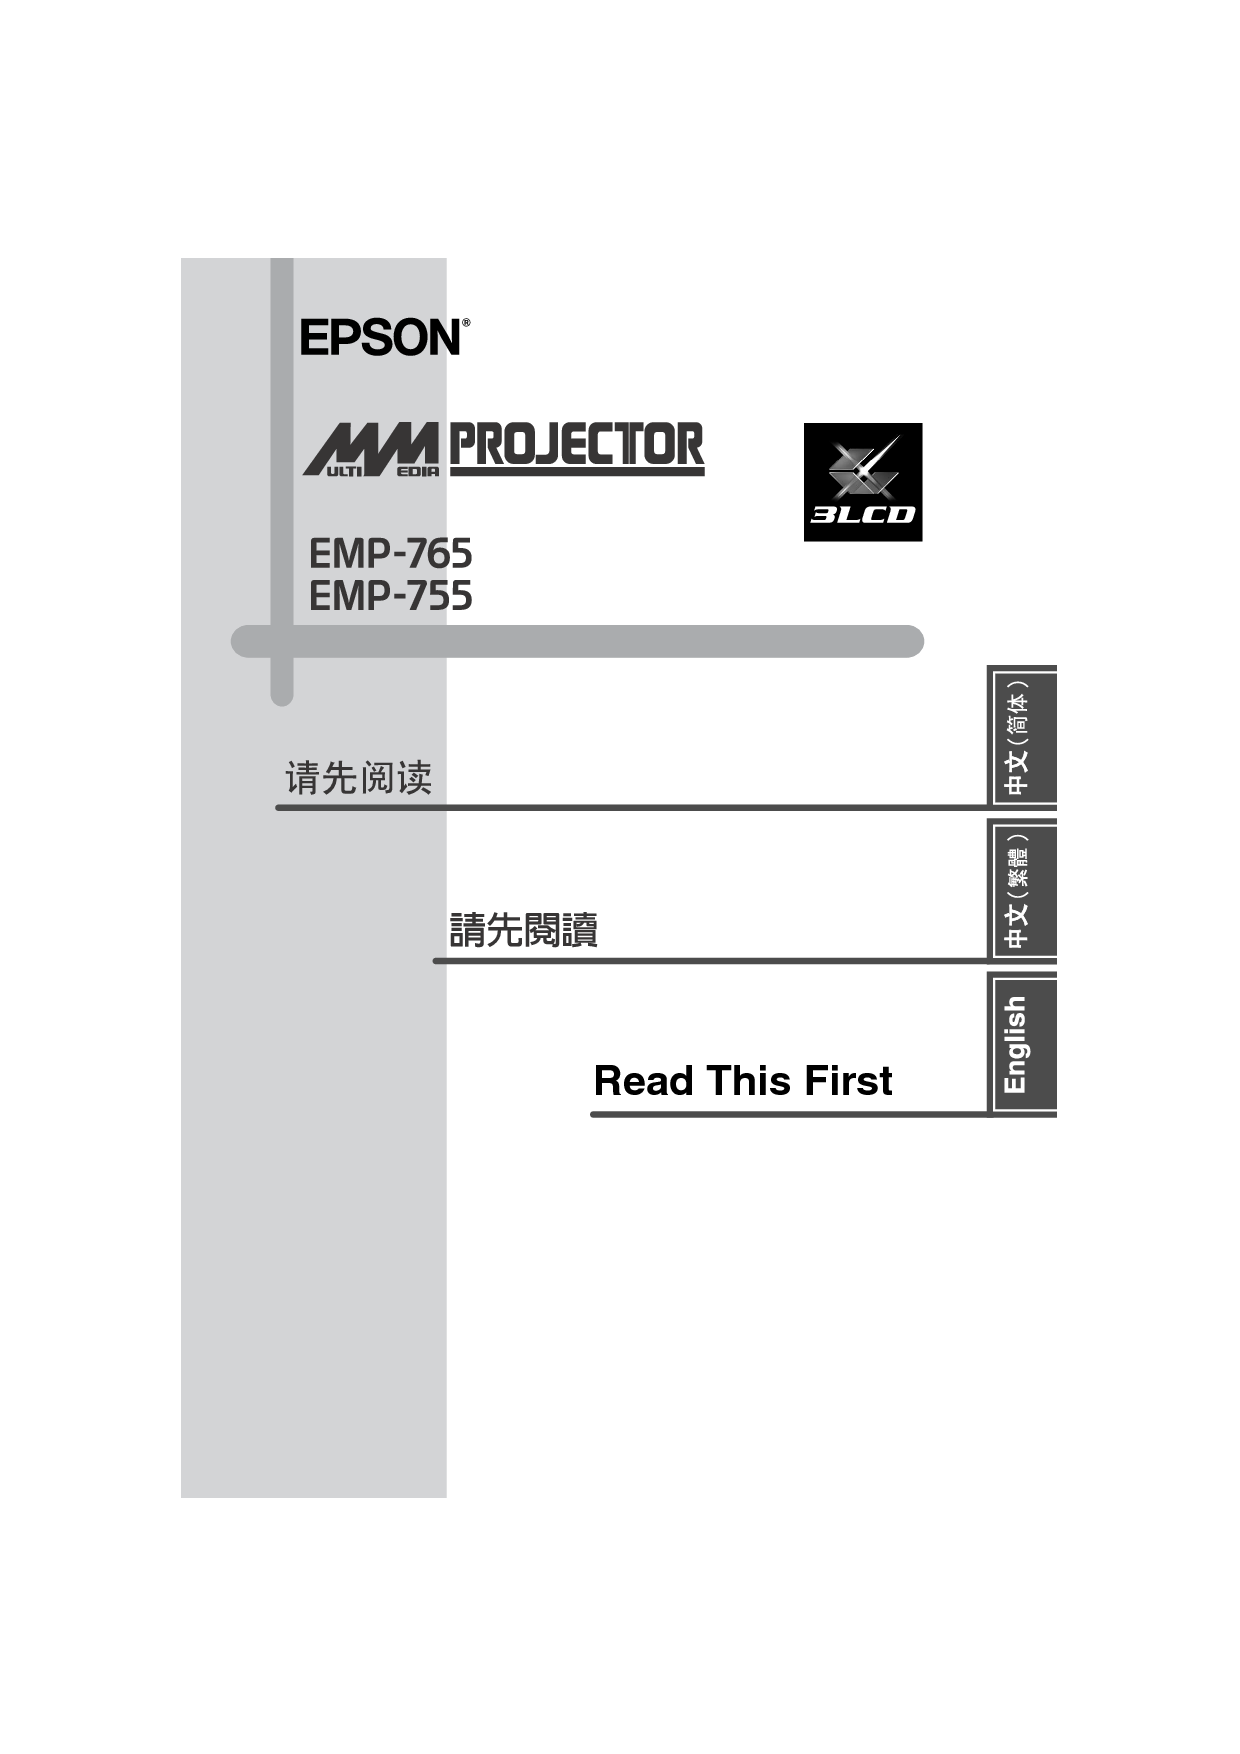 爱普生 Epson EMP-755 使用说明书 封面